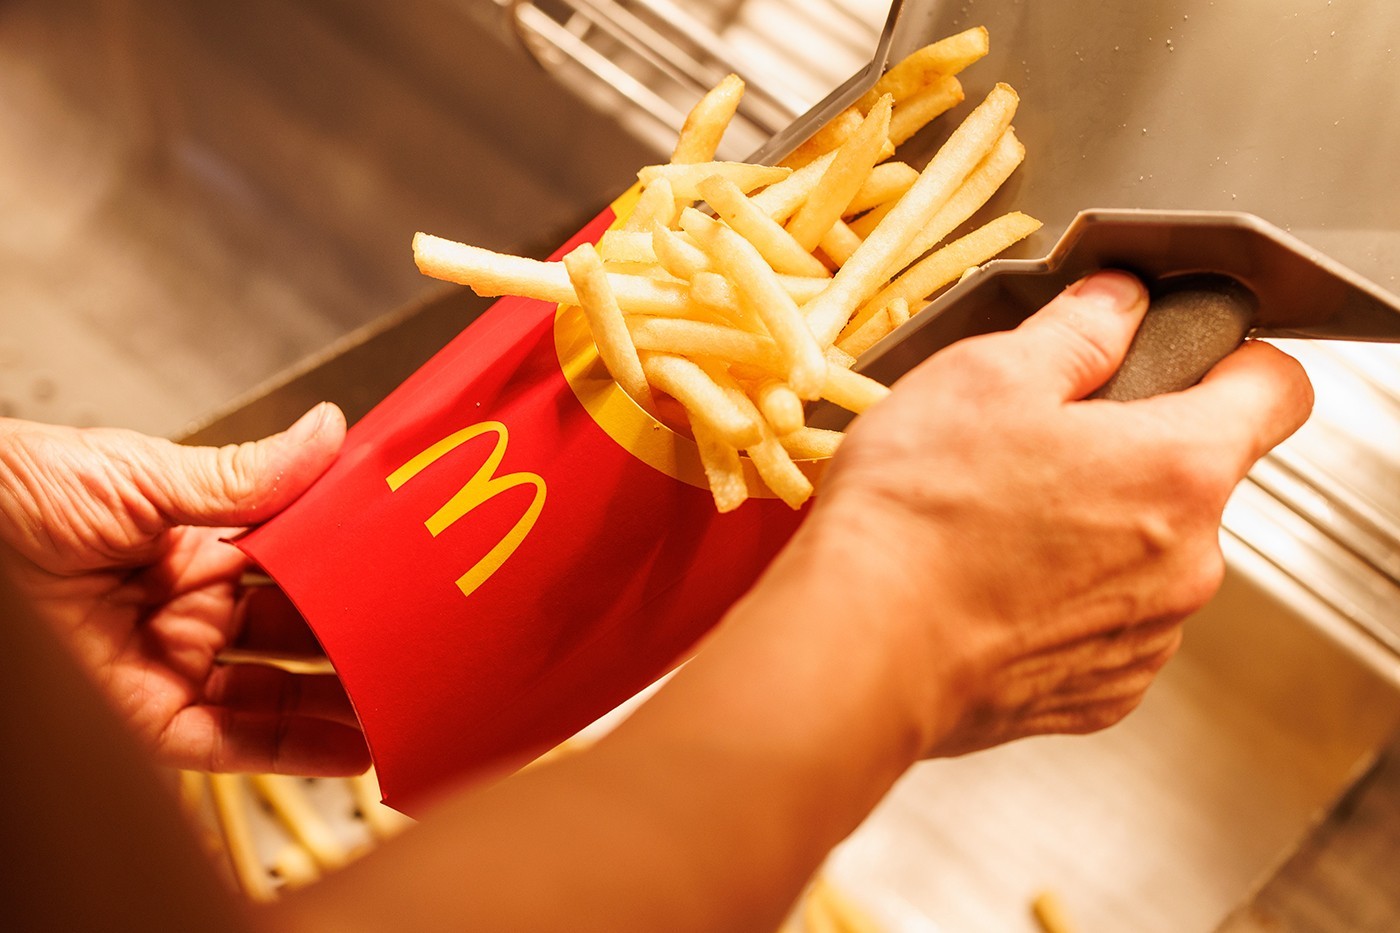 日本麦当劳 McDonald's 宣布重启中、大份薯条贩售